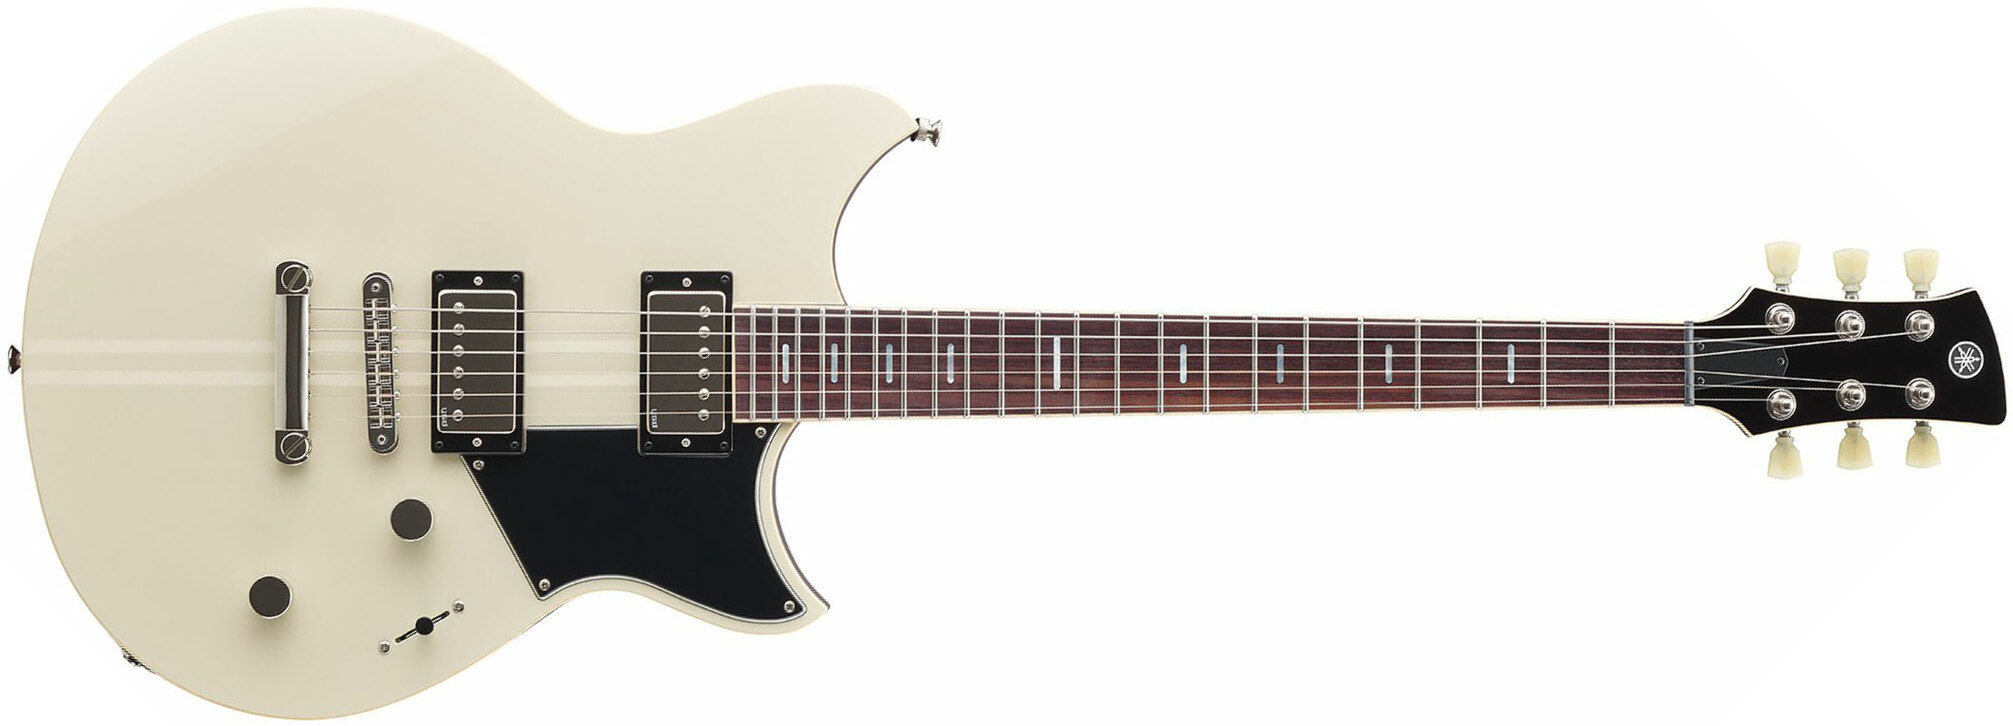 Yamaha Rss20 Revstar Standard Hh Ht Rw - Vintage White - Double Cut E-Gitarre - Main picture